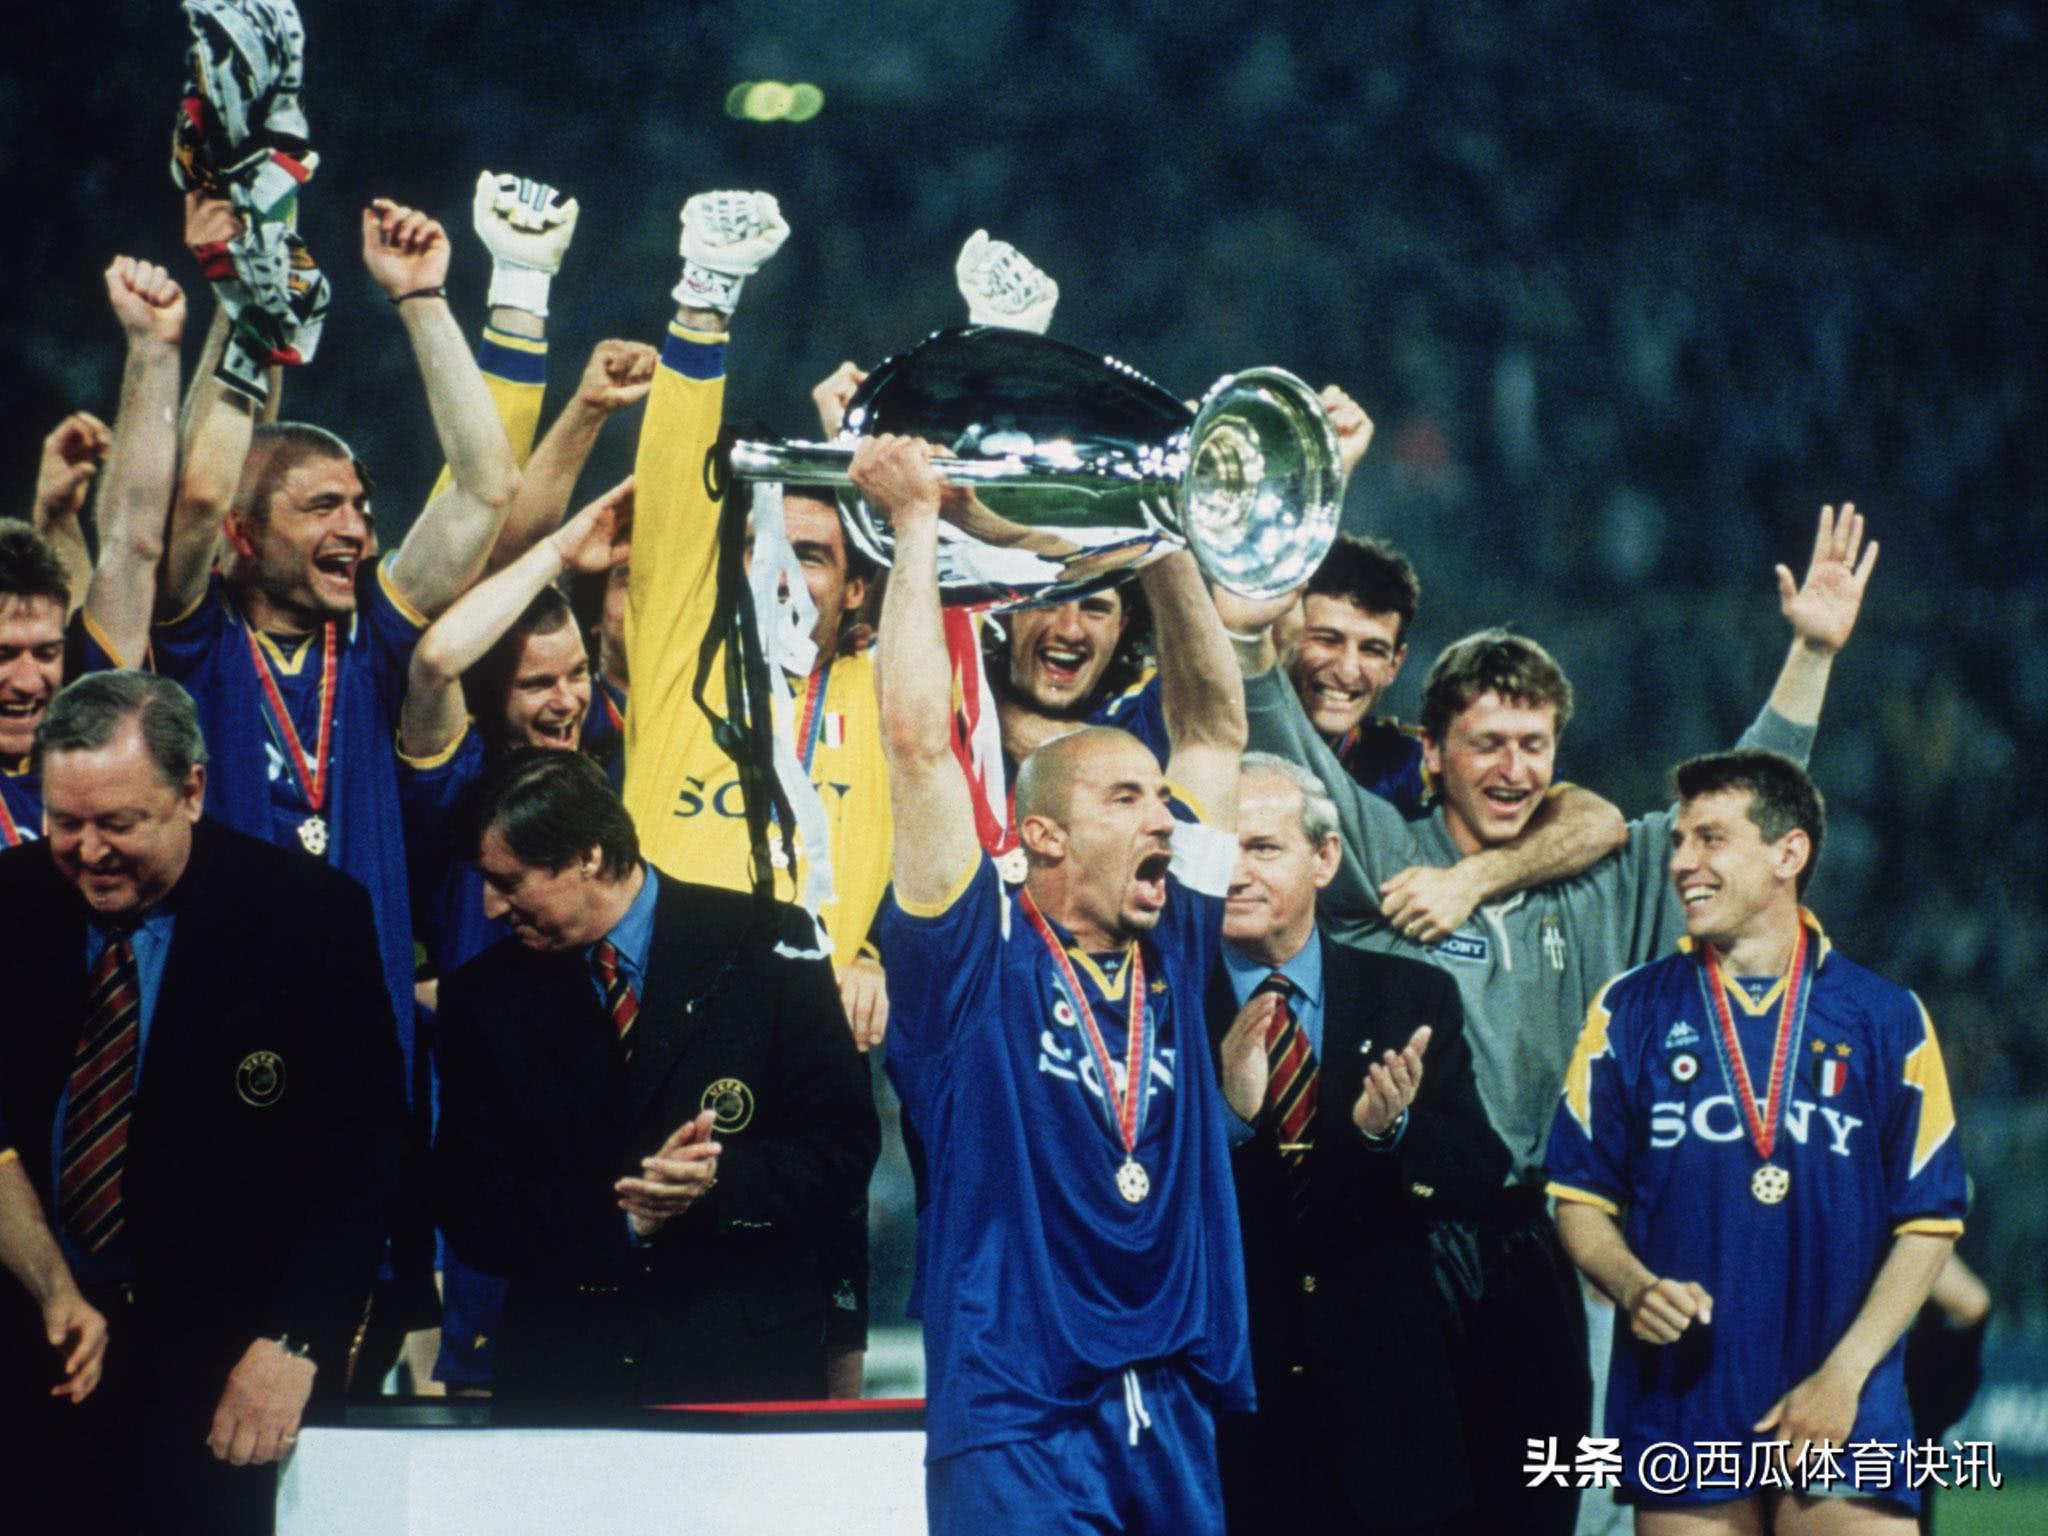 95 96欧冠决赛 96年欧冠决赛回忆——尤文图斯(2)